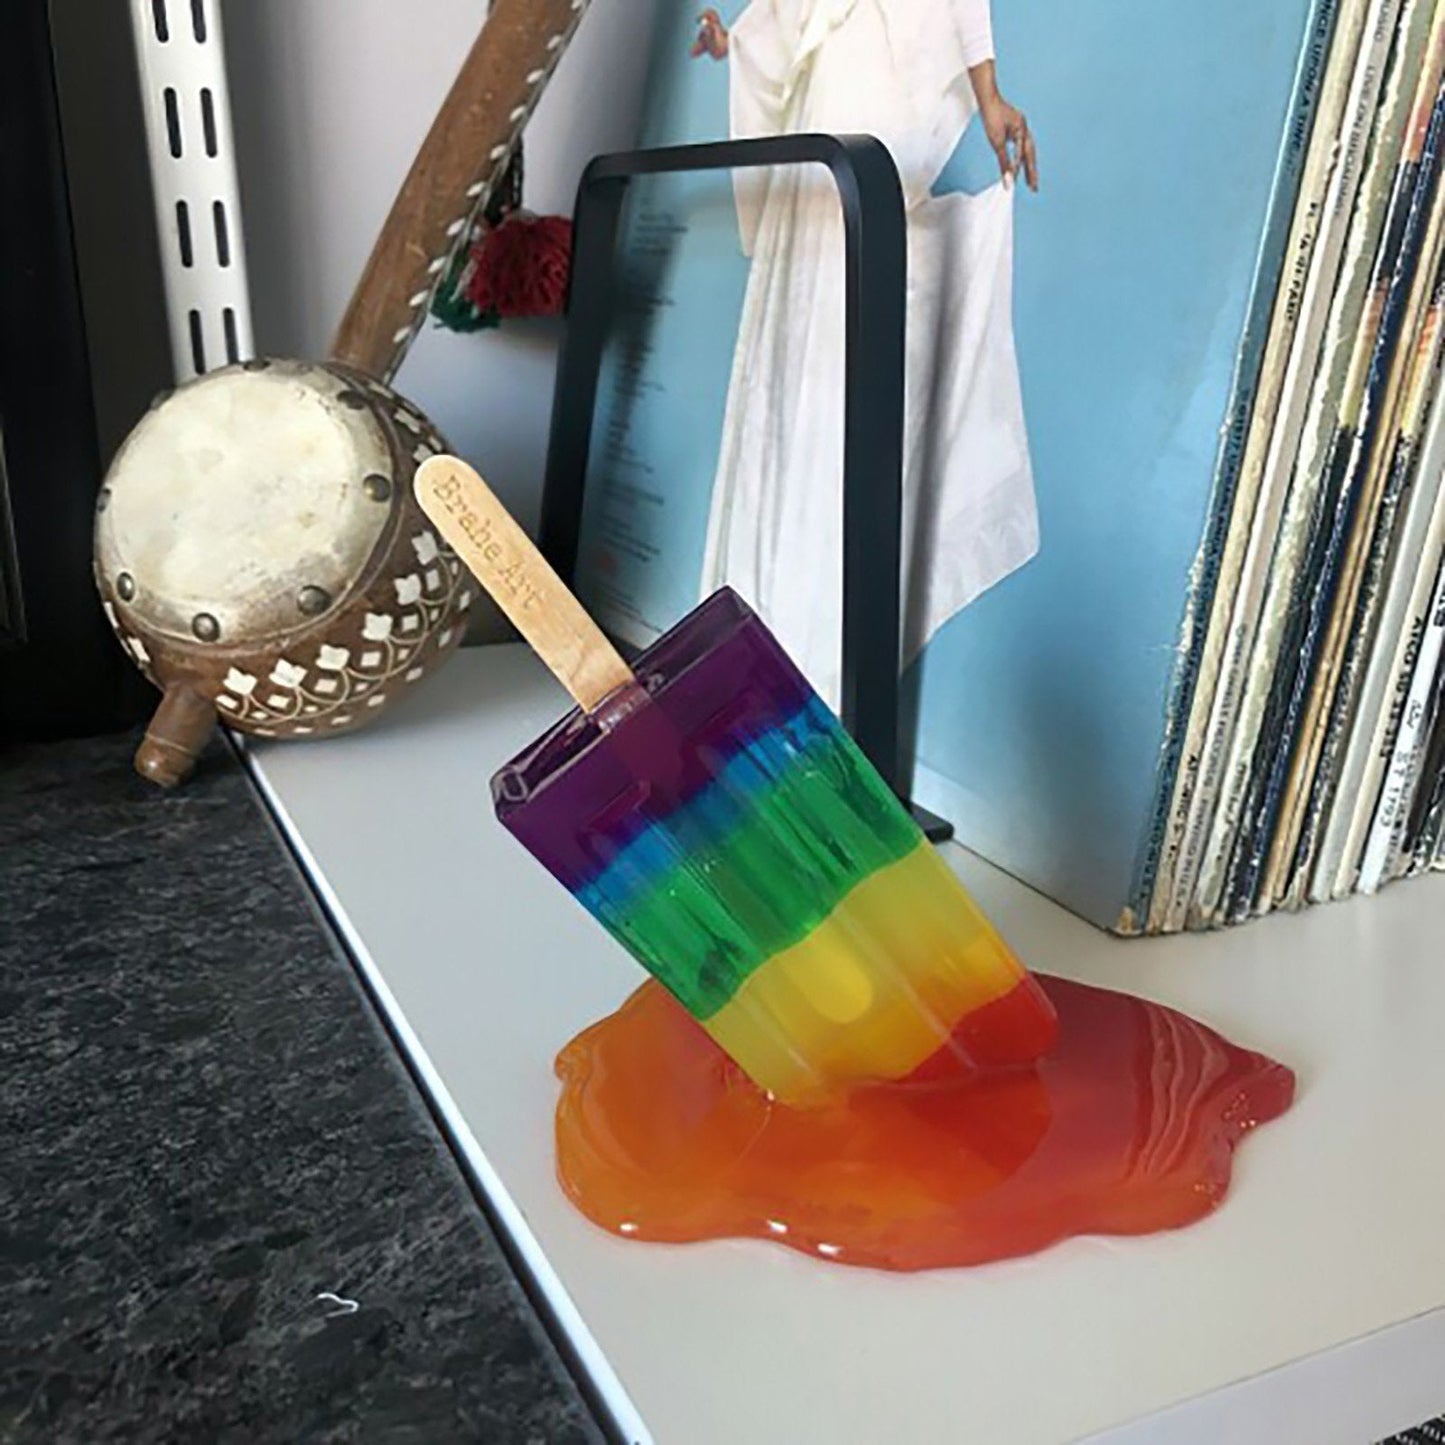 Melting Popsicle Sculpture